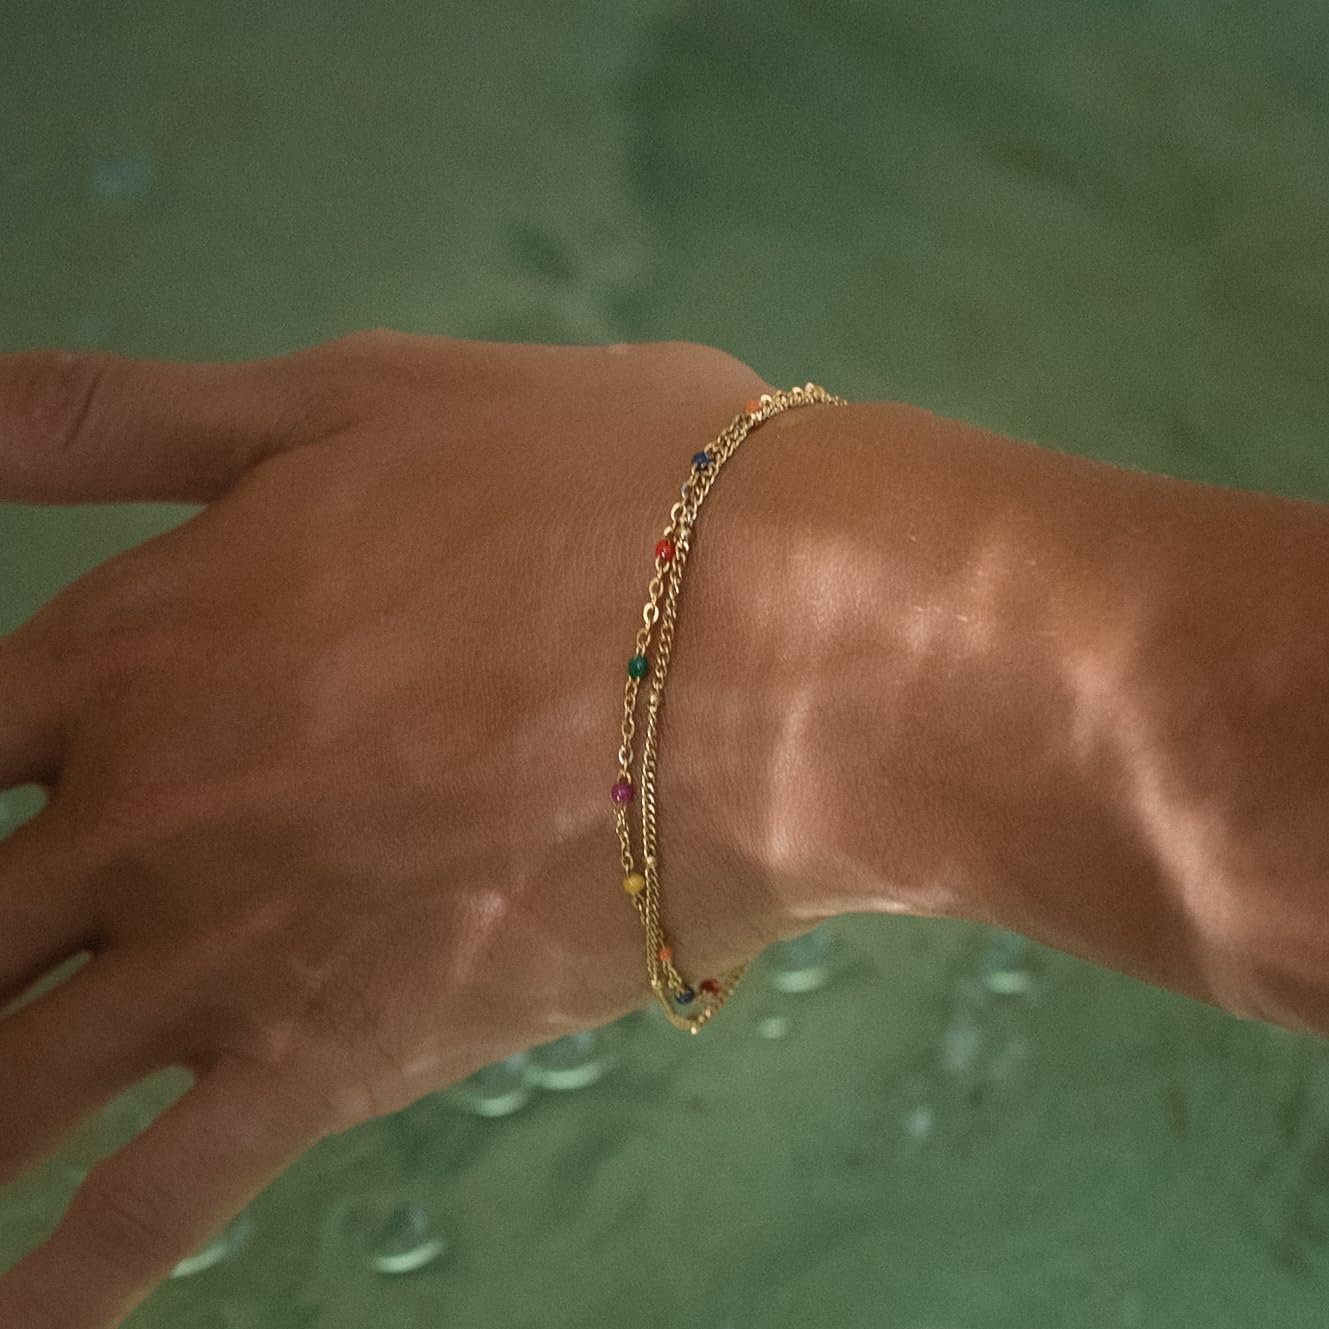 Made by Nami Edelstahlarmband Zweireihiges Armband Damen Gold aus Edelstahl mit bunten Perlen, 20 + 5 cm Длина Wasserfest Chakra Schmuck Bunt